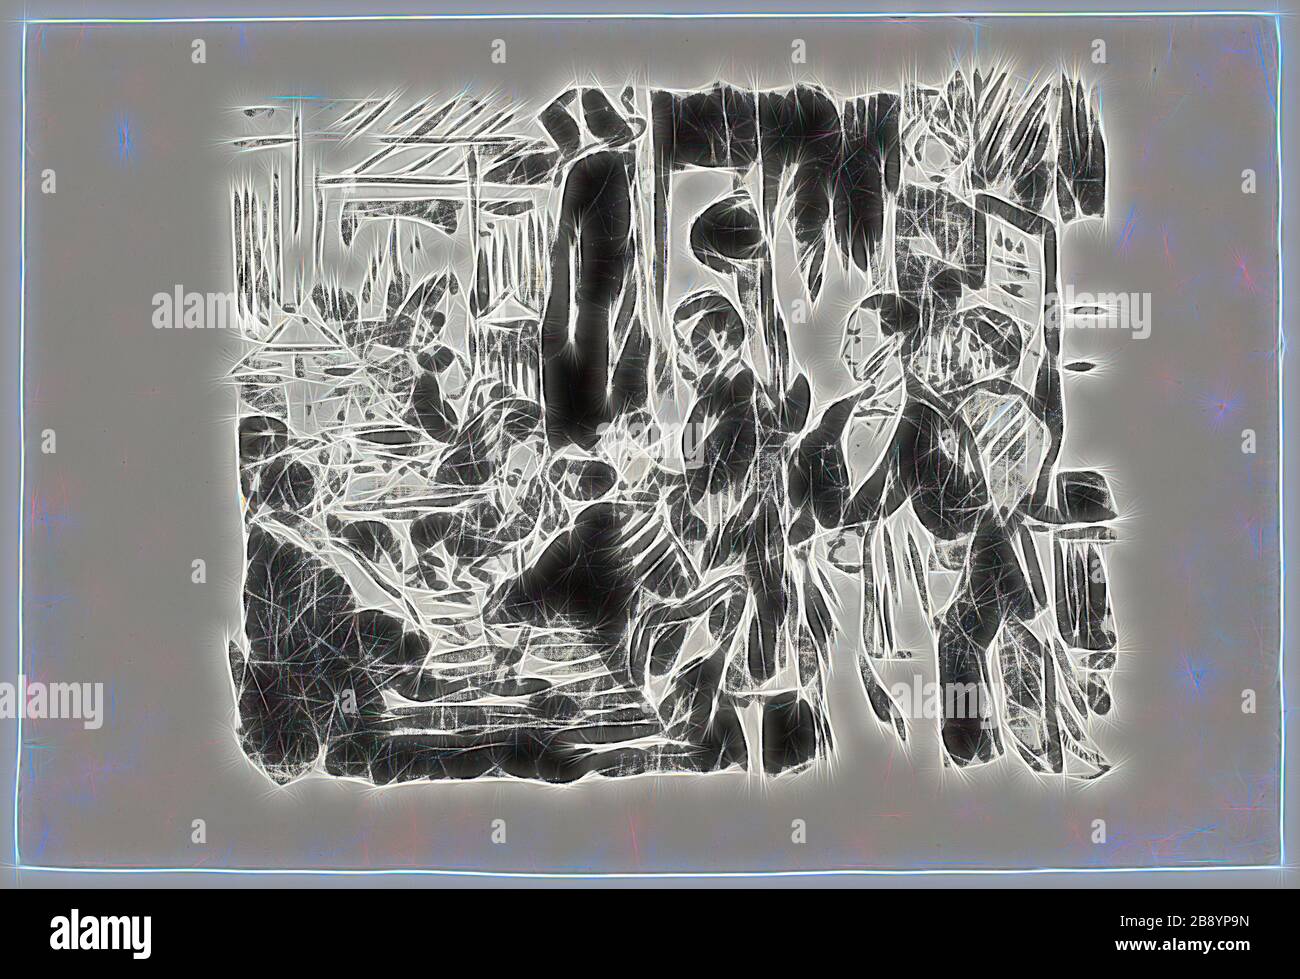 Im Café (unveröffentlichte Platte), im Jahre 1874, Édouard Manet (Französisch, 1832-1883), gedruckt von Lefman et Compagnie (Französisch, 19. Jahrhundert), Frankreich, Gillotage in Schwarz auf China-Papier aus Elfenbein, 270 × 339 mm (Bild), 325 × 482 mm (Blatt), neu von Gibon vorgestellt, Design von warmem fröhlichem Leuchten von Helligkeit und Lichtstrahlen. Klassische Kunst mit moderner Note neu erfunden. Fotografie, inspiriert vom Futurismus, die dynamische Energie moderner Technologie, Bewegung, Geschwindigkeit und Kultur revolutionieren. Stockfoto